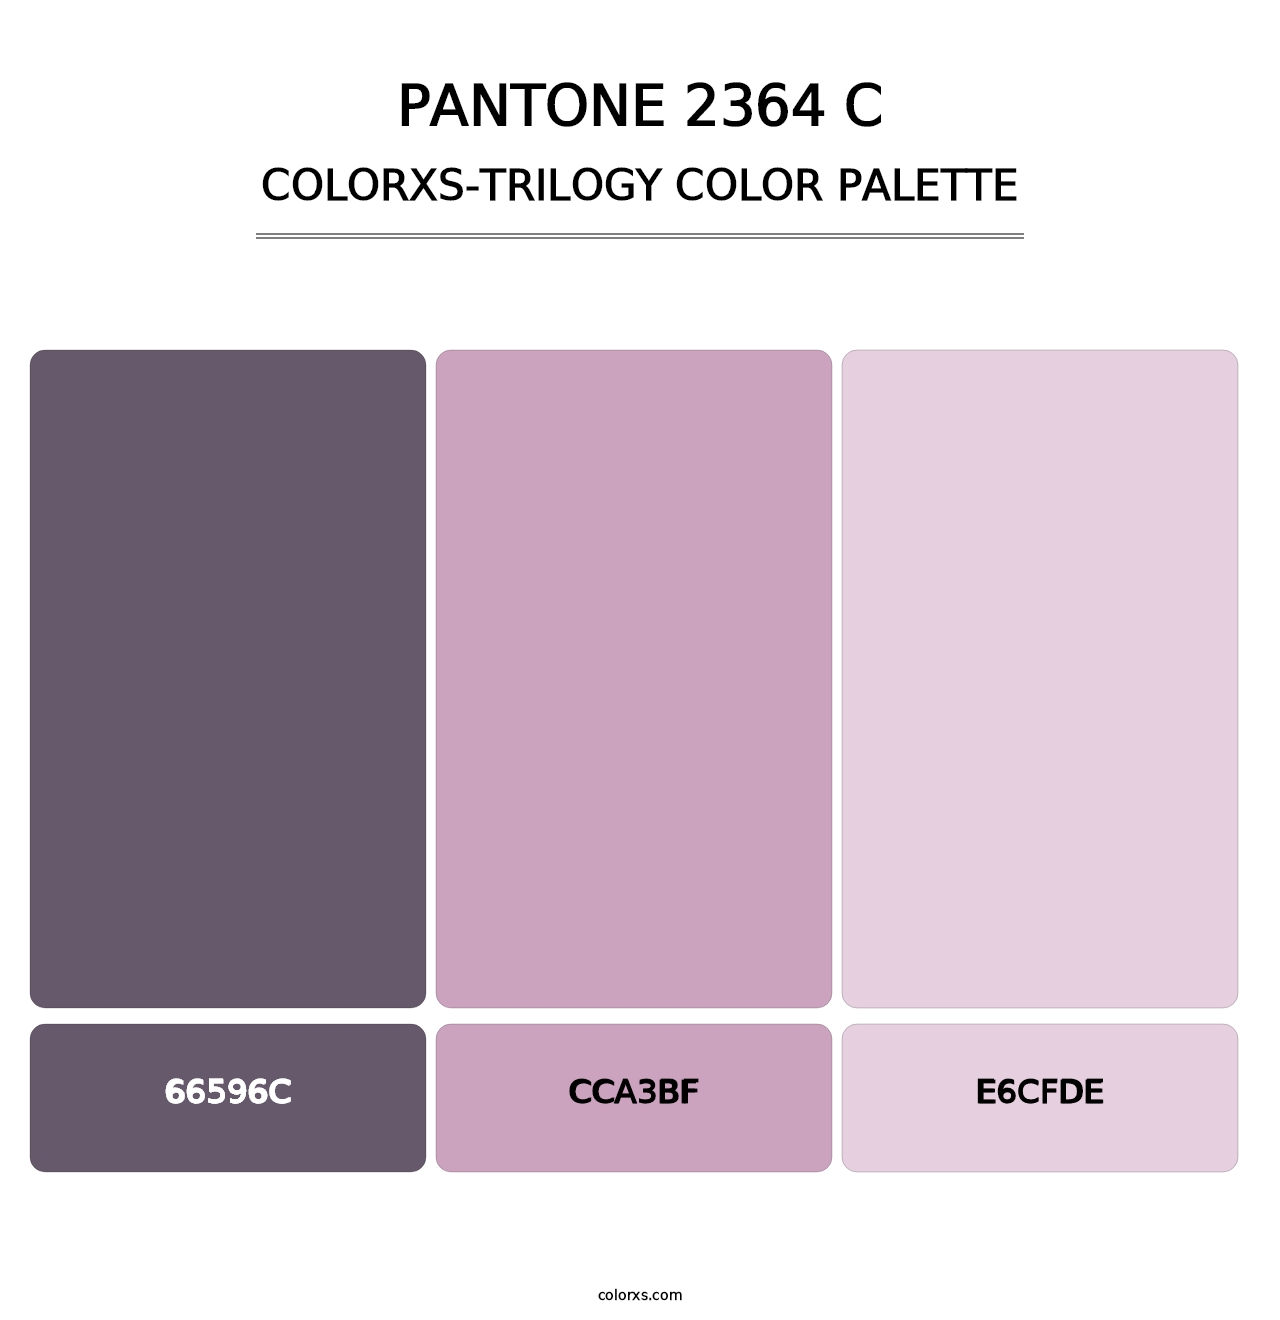 PANTONE 2364 C - Colorxs Trilogy Palette